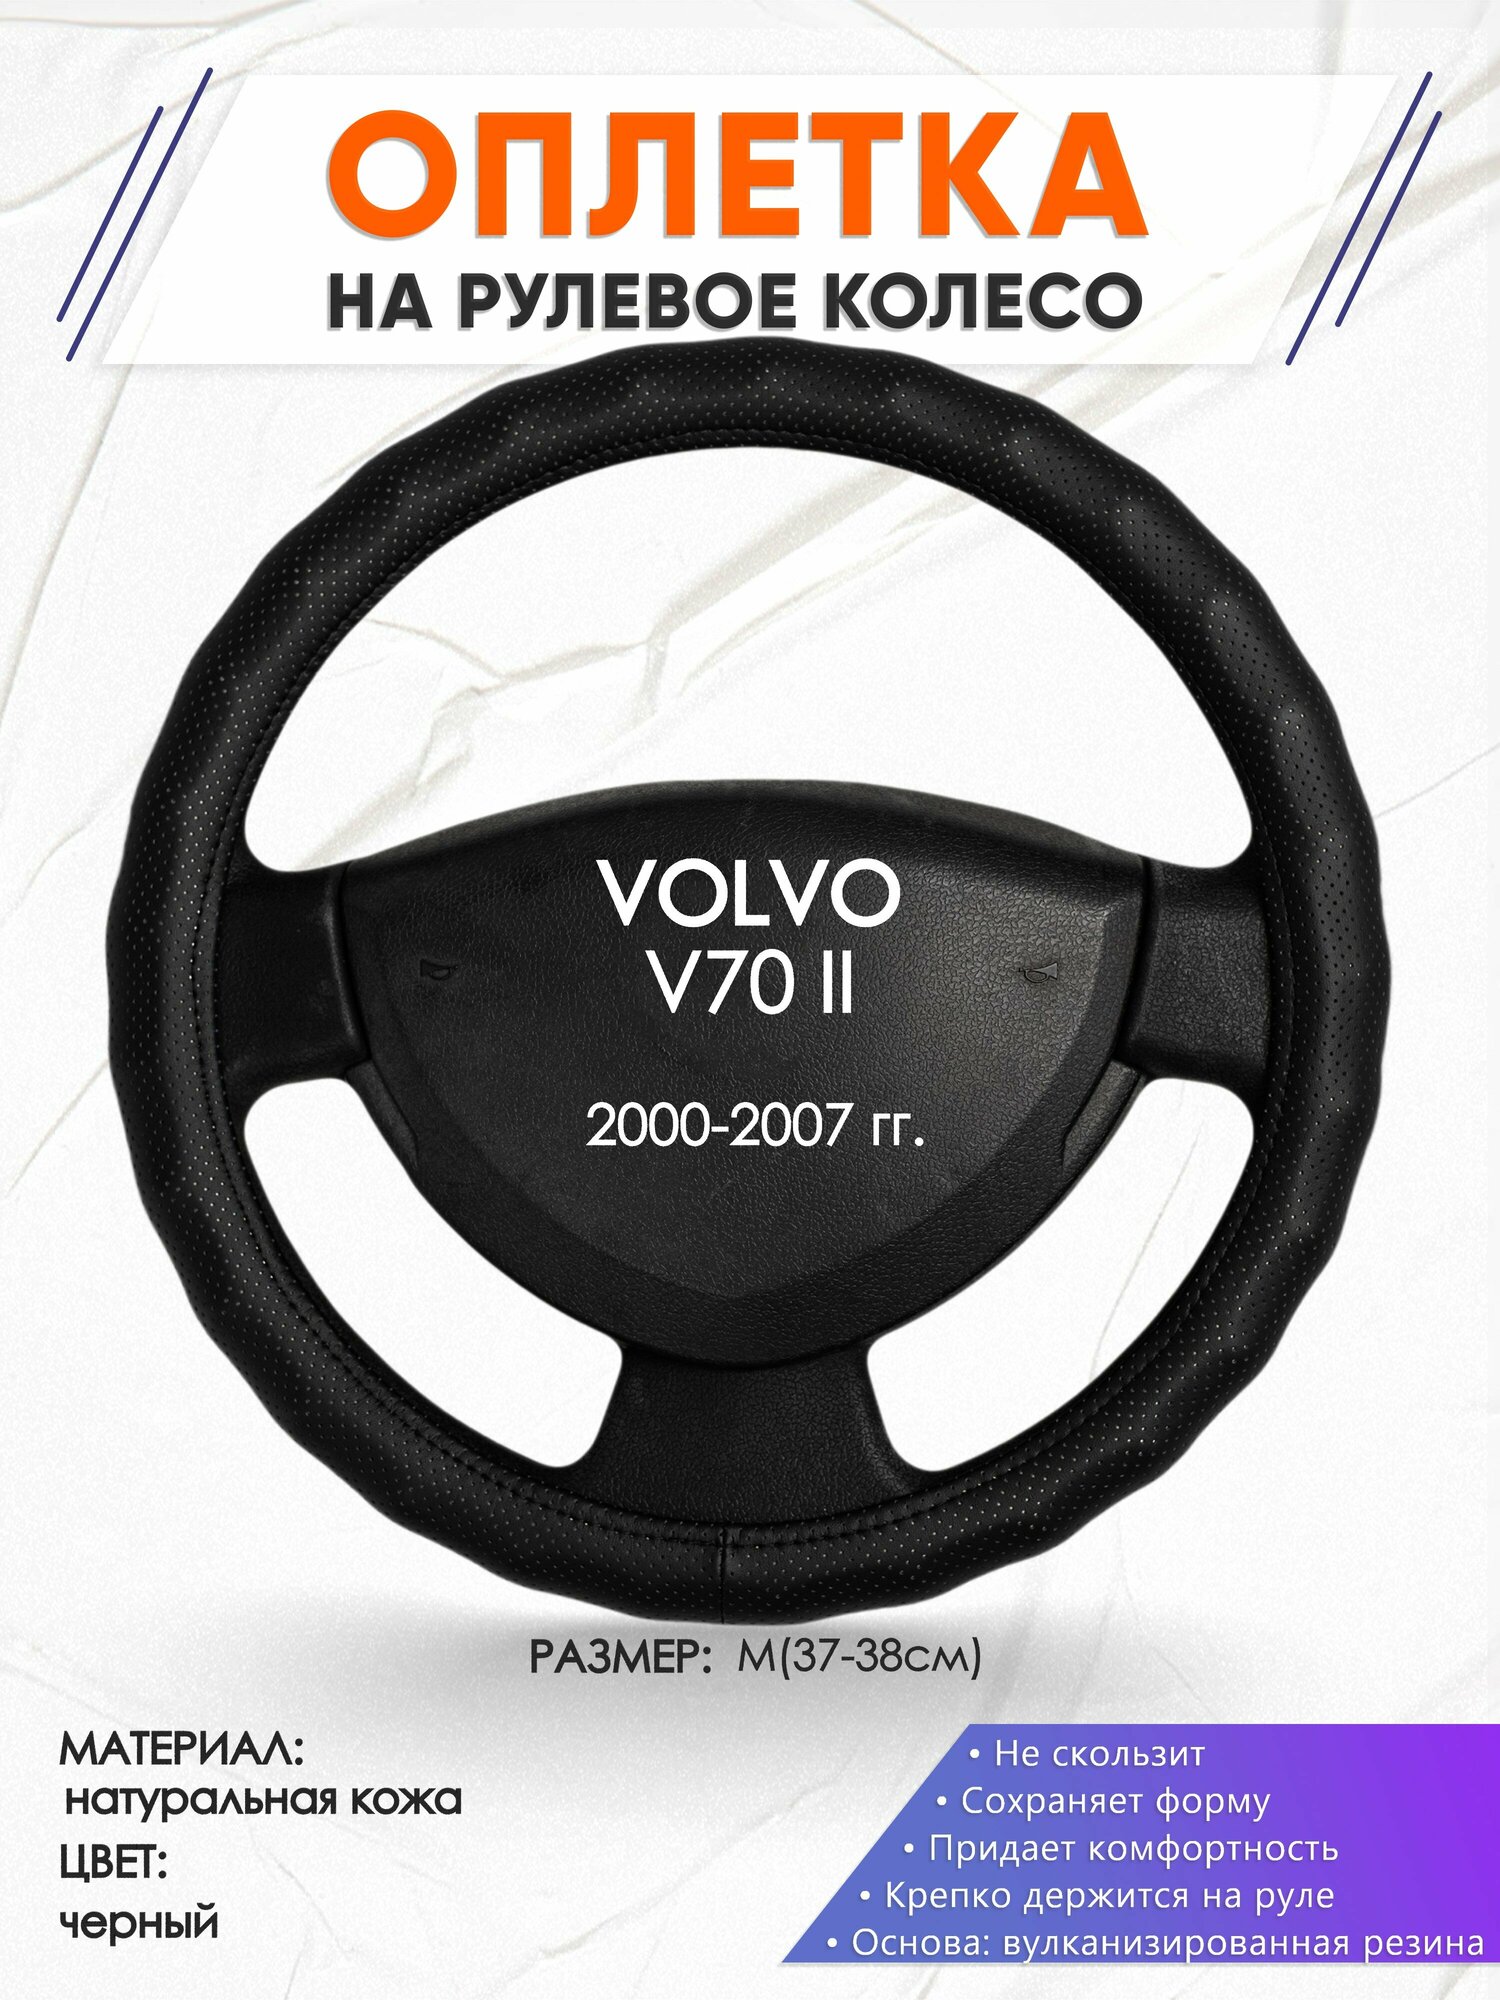 Оплетка наруль для VOLVO V70 II(Вольво в70) 2000-2007 годов выпуска, размер M(37-38см), Натуральная кожа 30